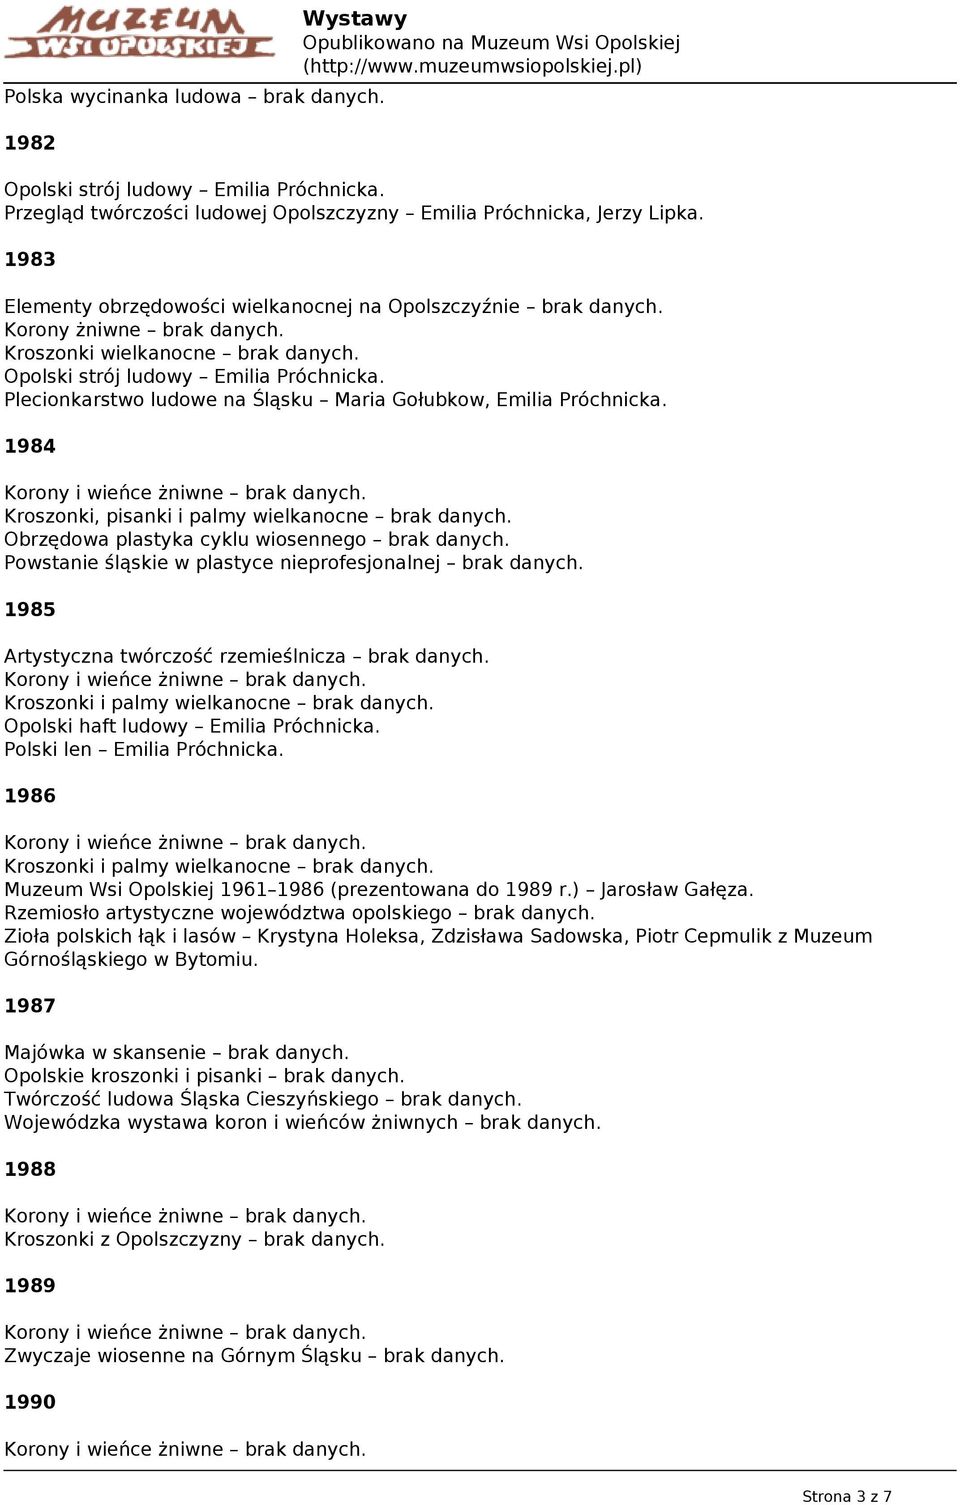 Plecionkarstwo ludowe na Śląsku Maria Gołubkow, Emilia Próchnicka. 1984 Kroszonki, pisanki i palmy wielkanocne brak danych. Obrzędowa plastyka cyklu wiosennego brak danych.